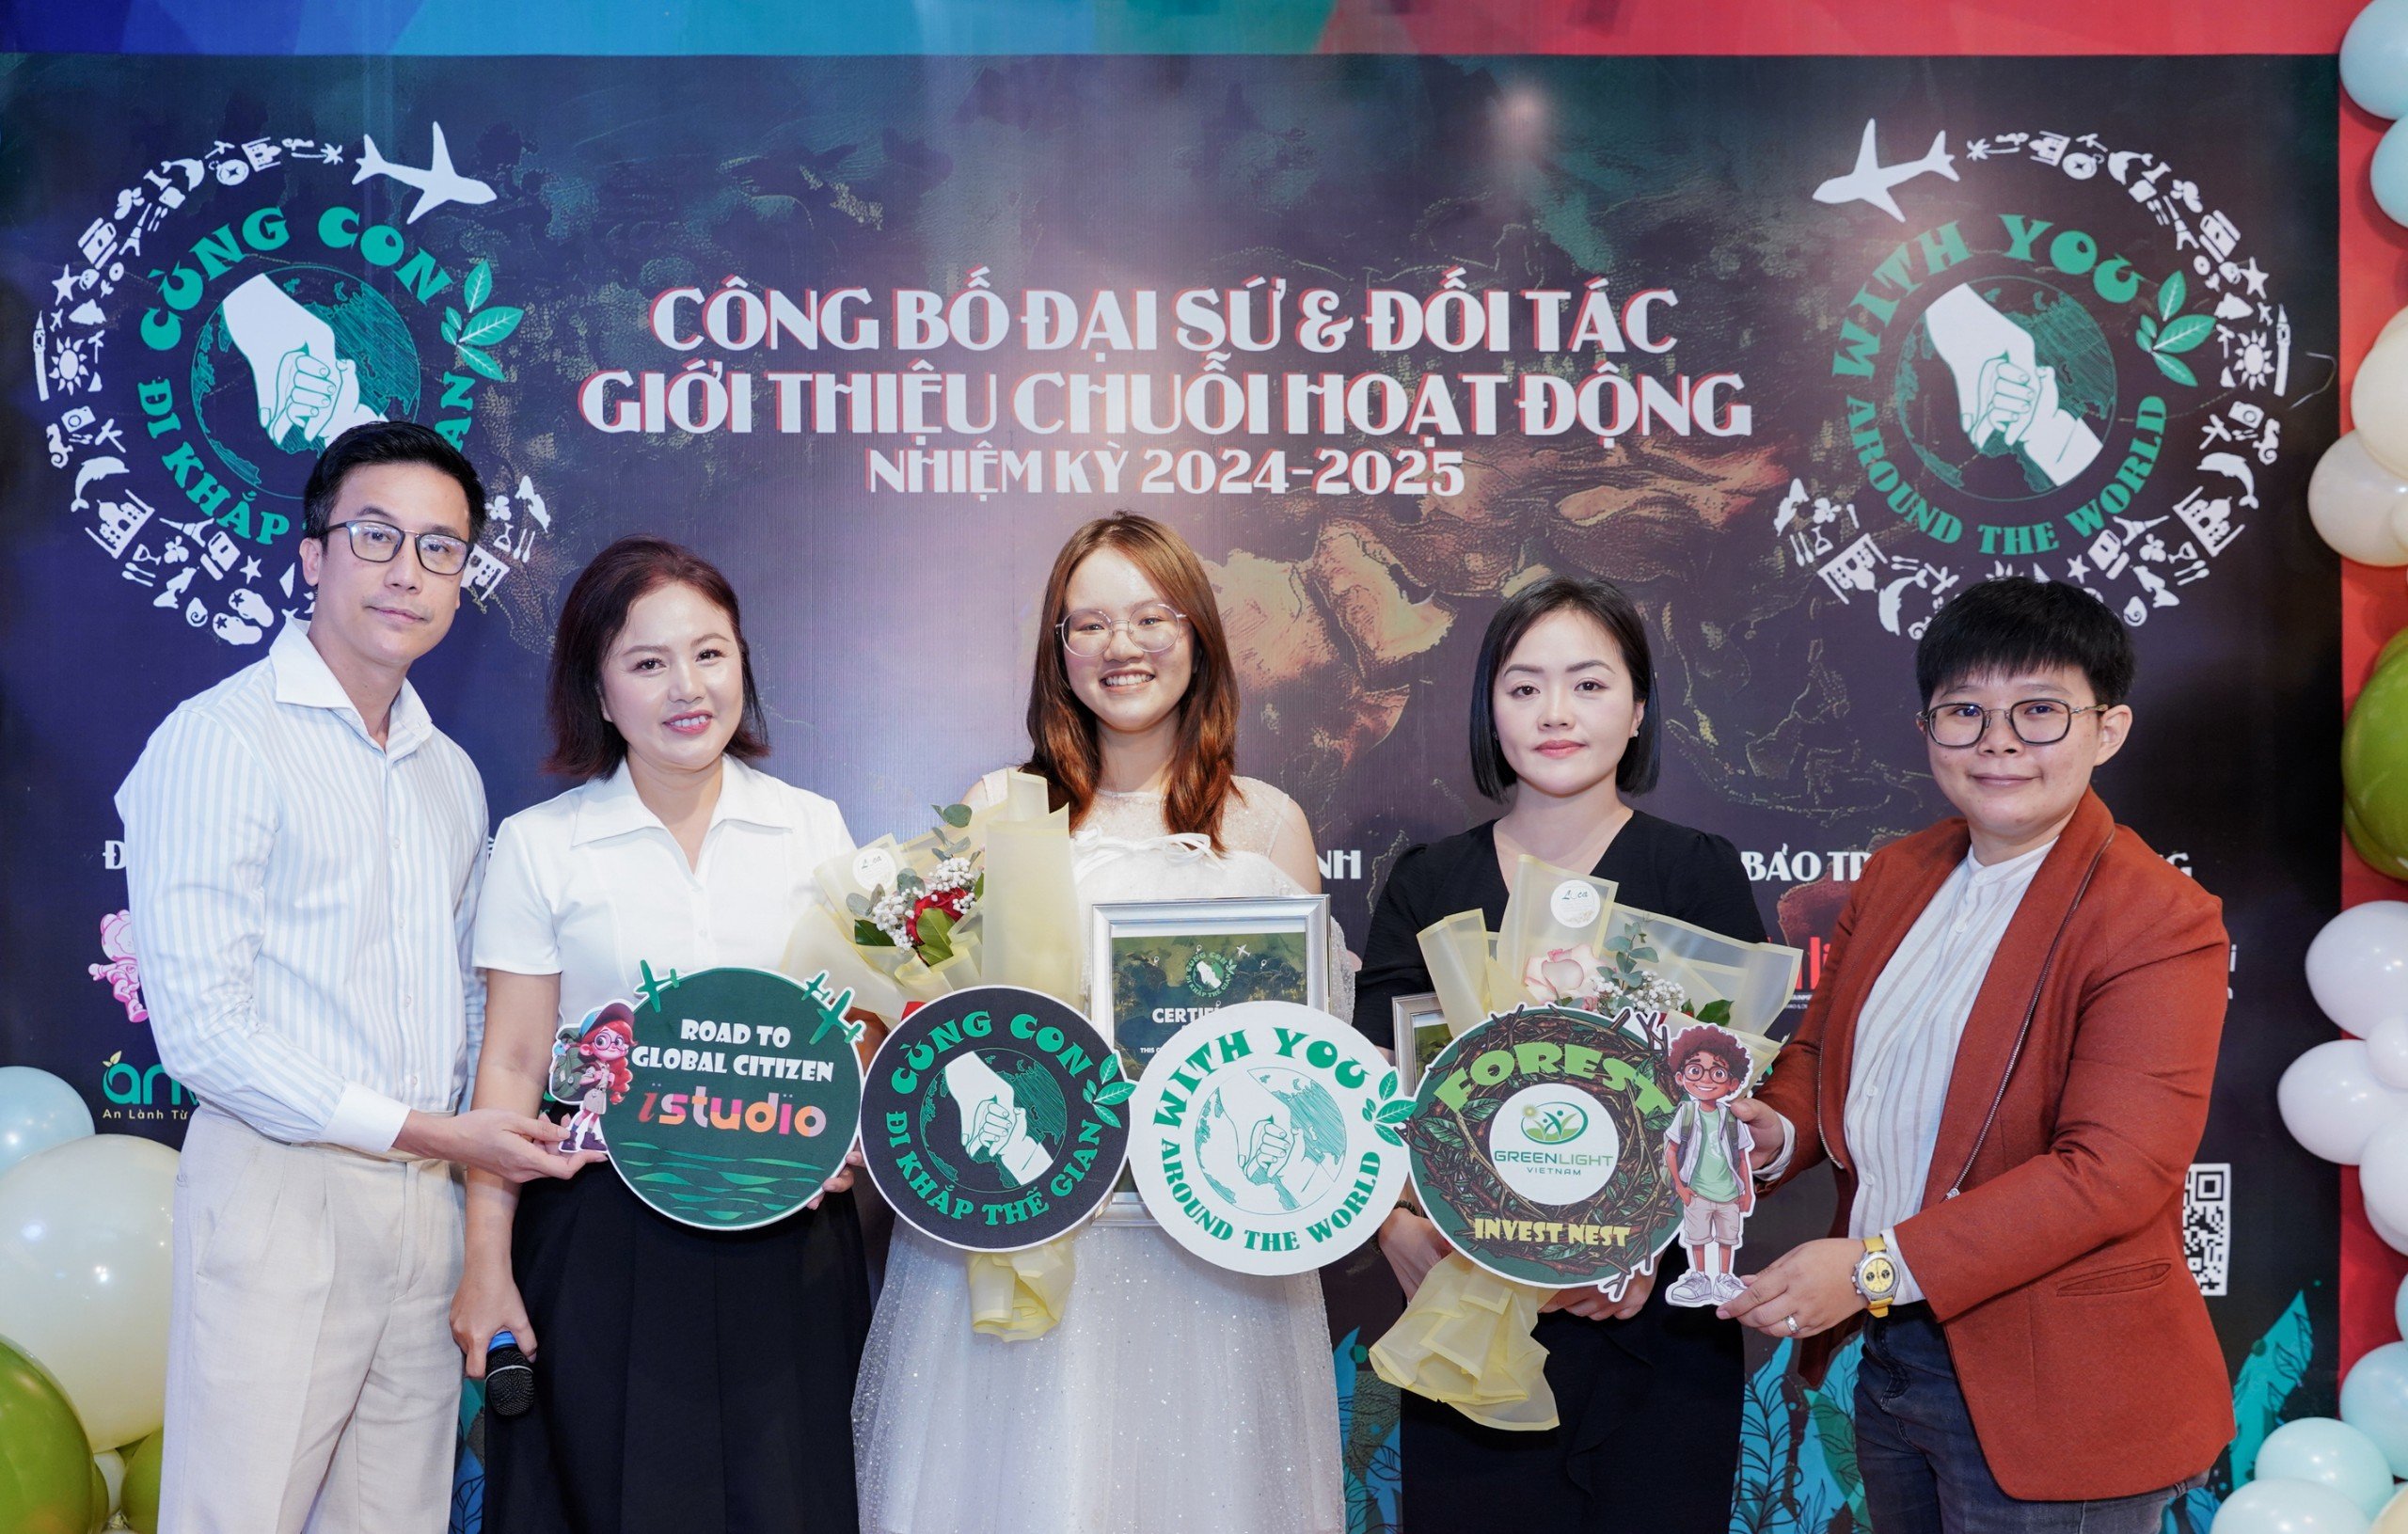 Green Light Việt Nam và “Cùng Con Đi Khắp Thế Gian” ra mắt chiến dịch đầu tư trồng rừng “Forest Invest Nest”